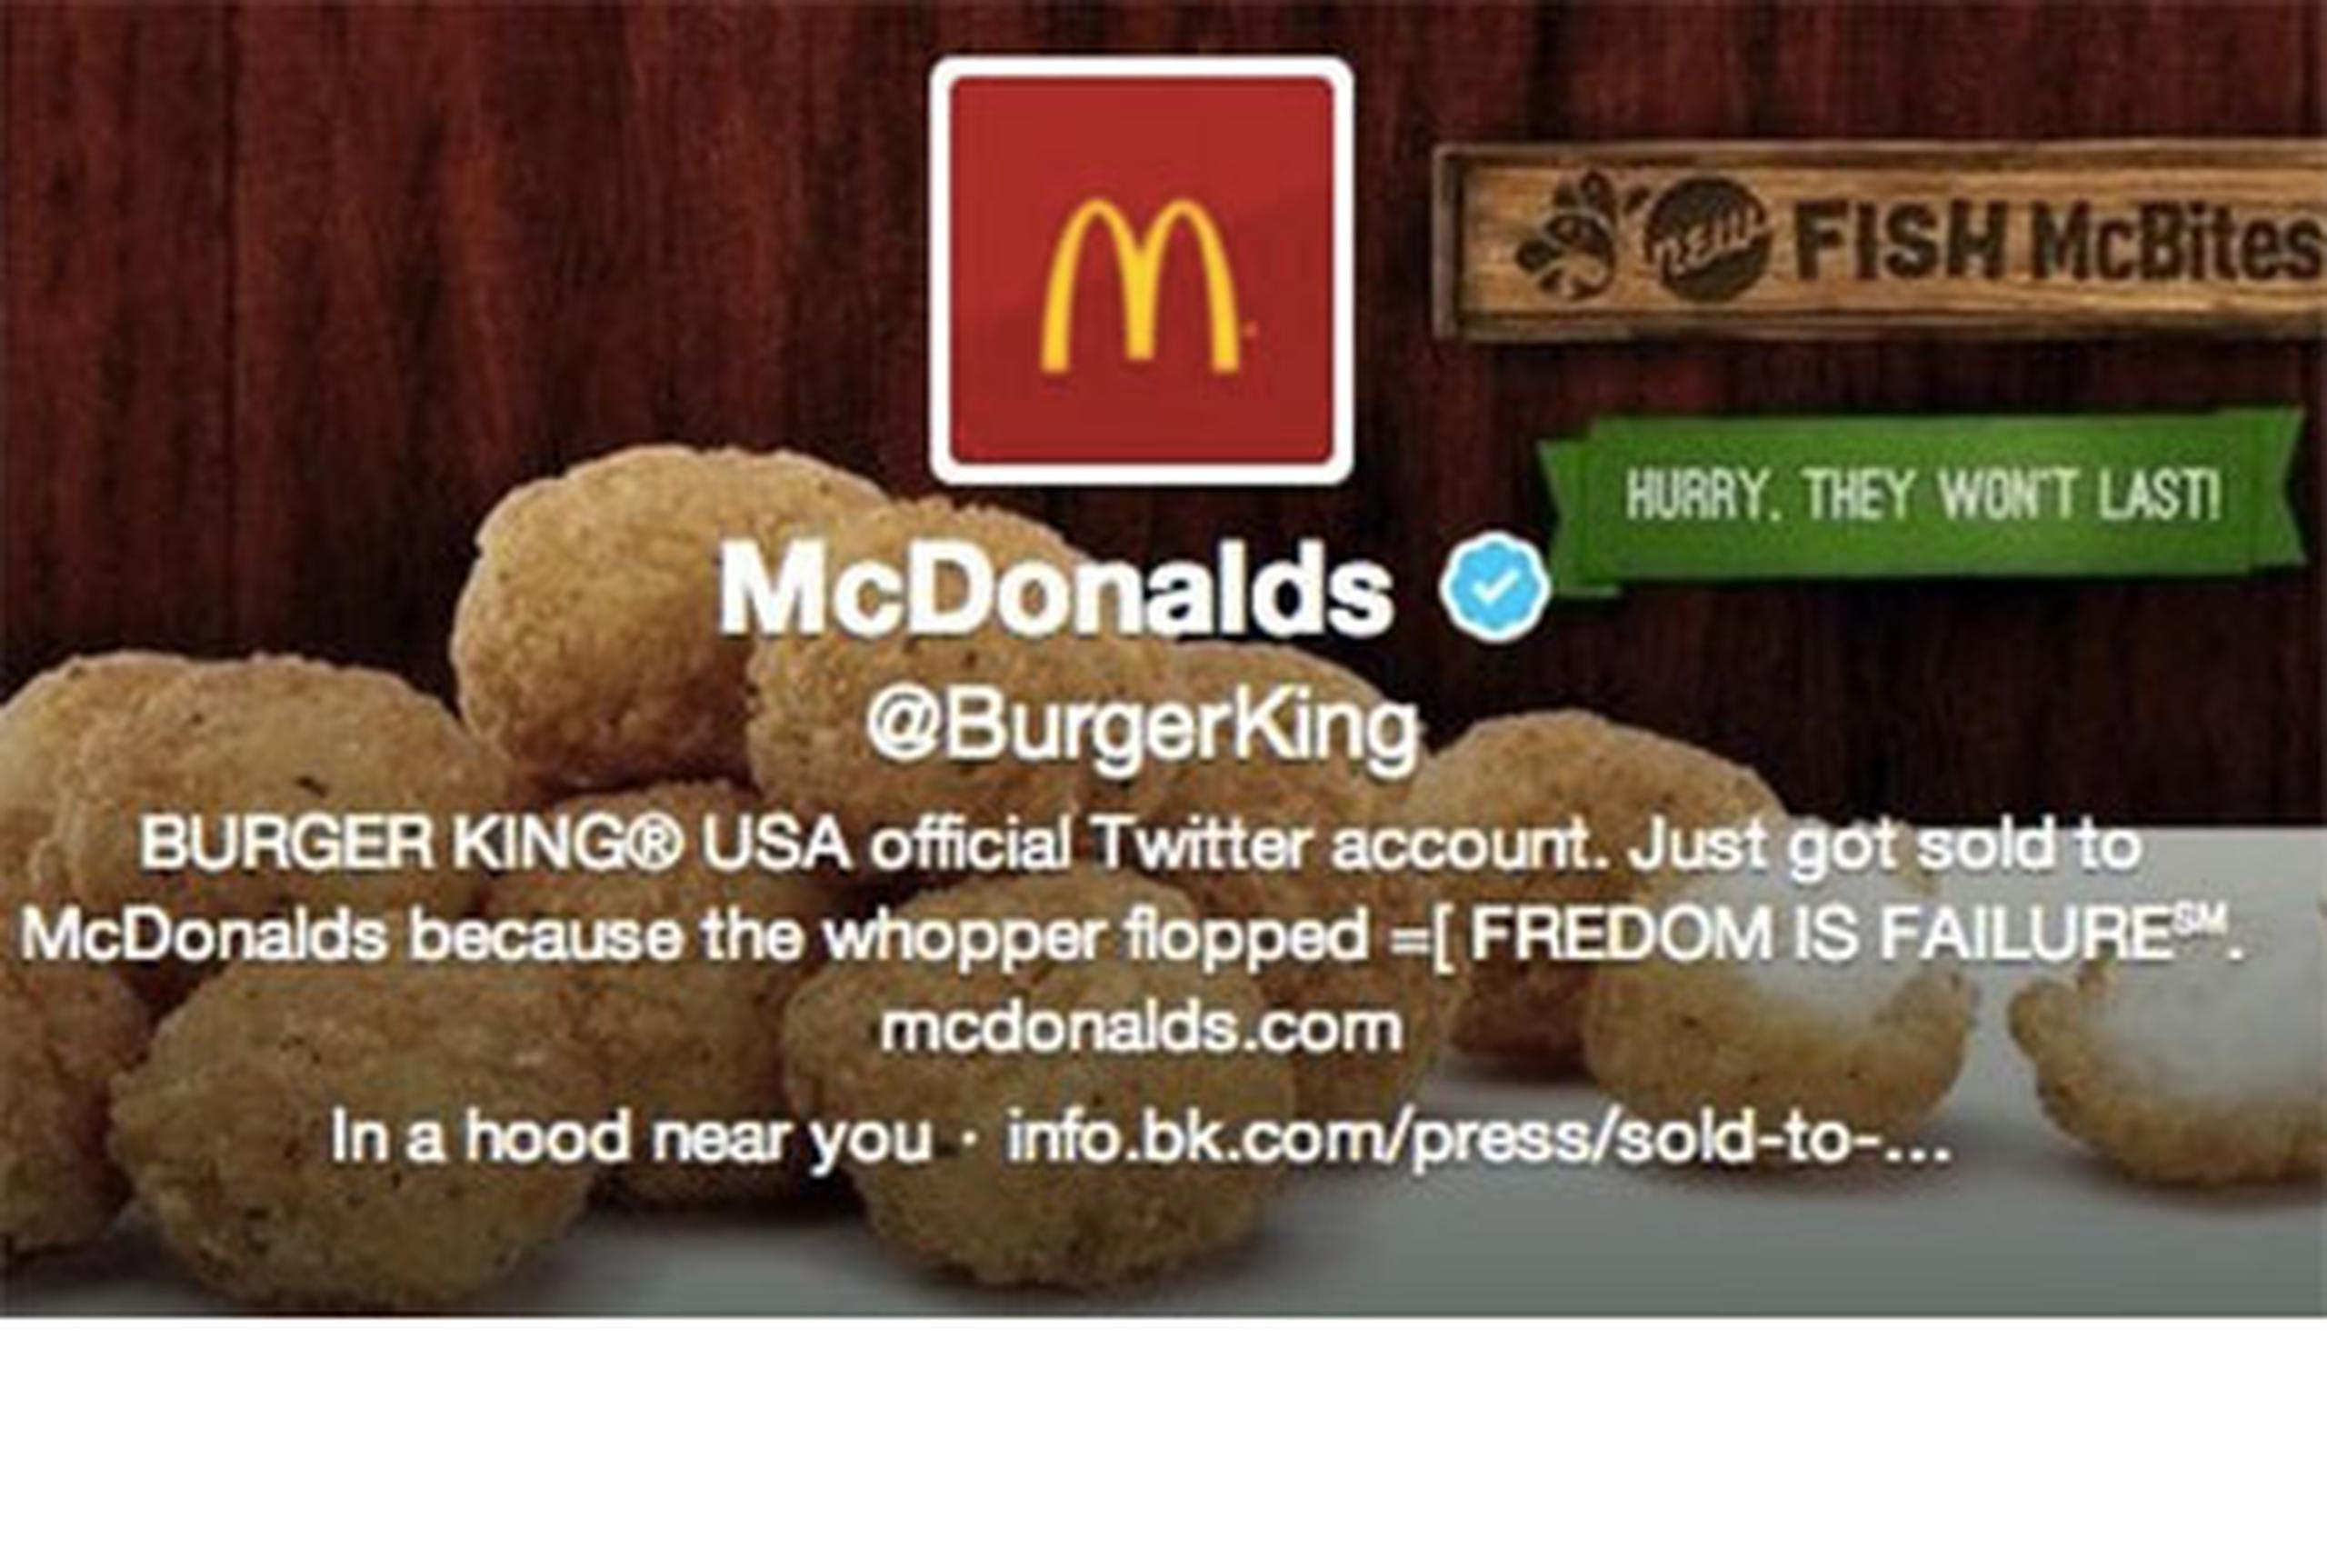 La imagen en Twitter de esta compañía de comida rápida cambió al logotipo de McDonald's.